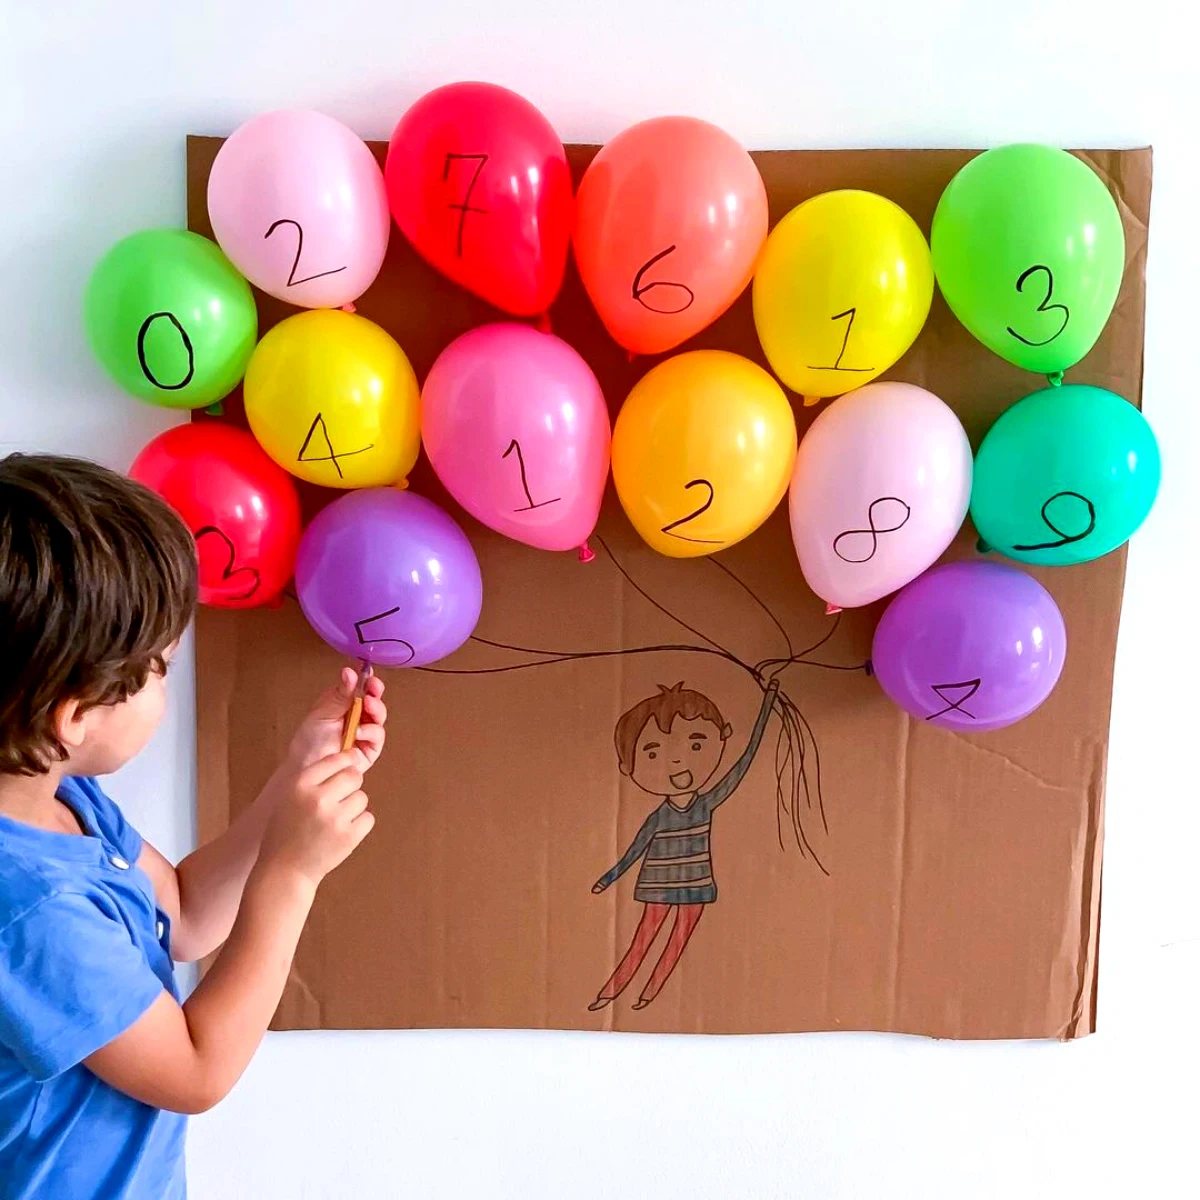 balons sur un carton avec des chiffres enfant 5 ans